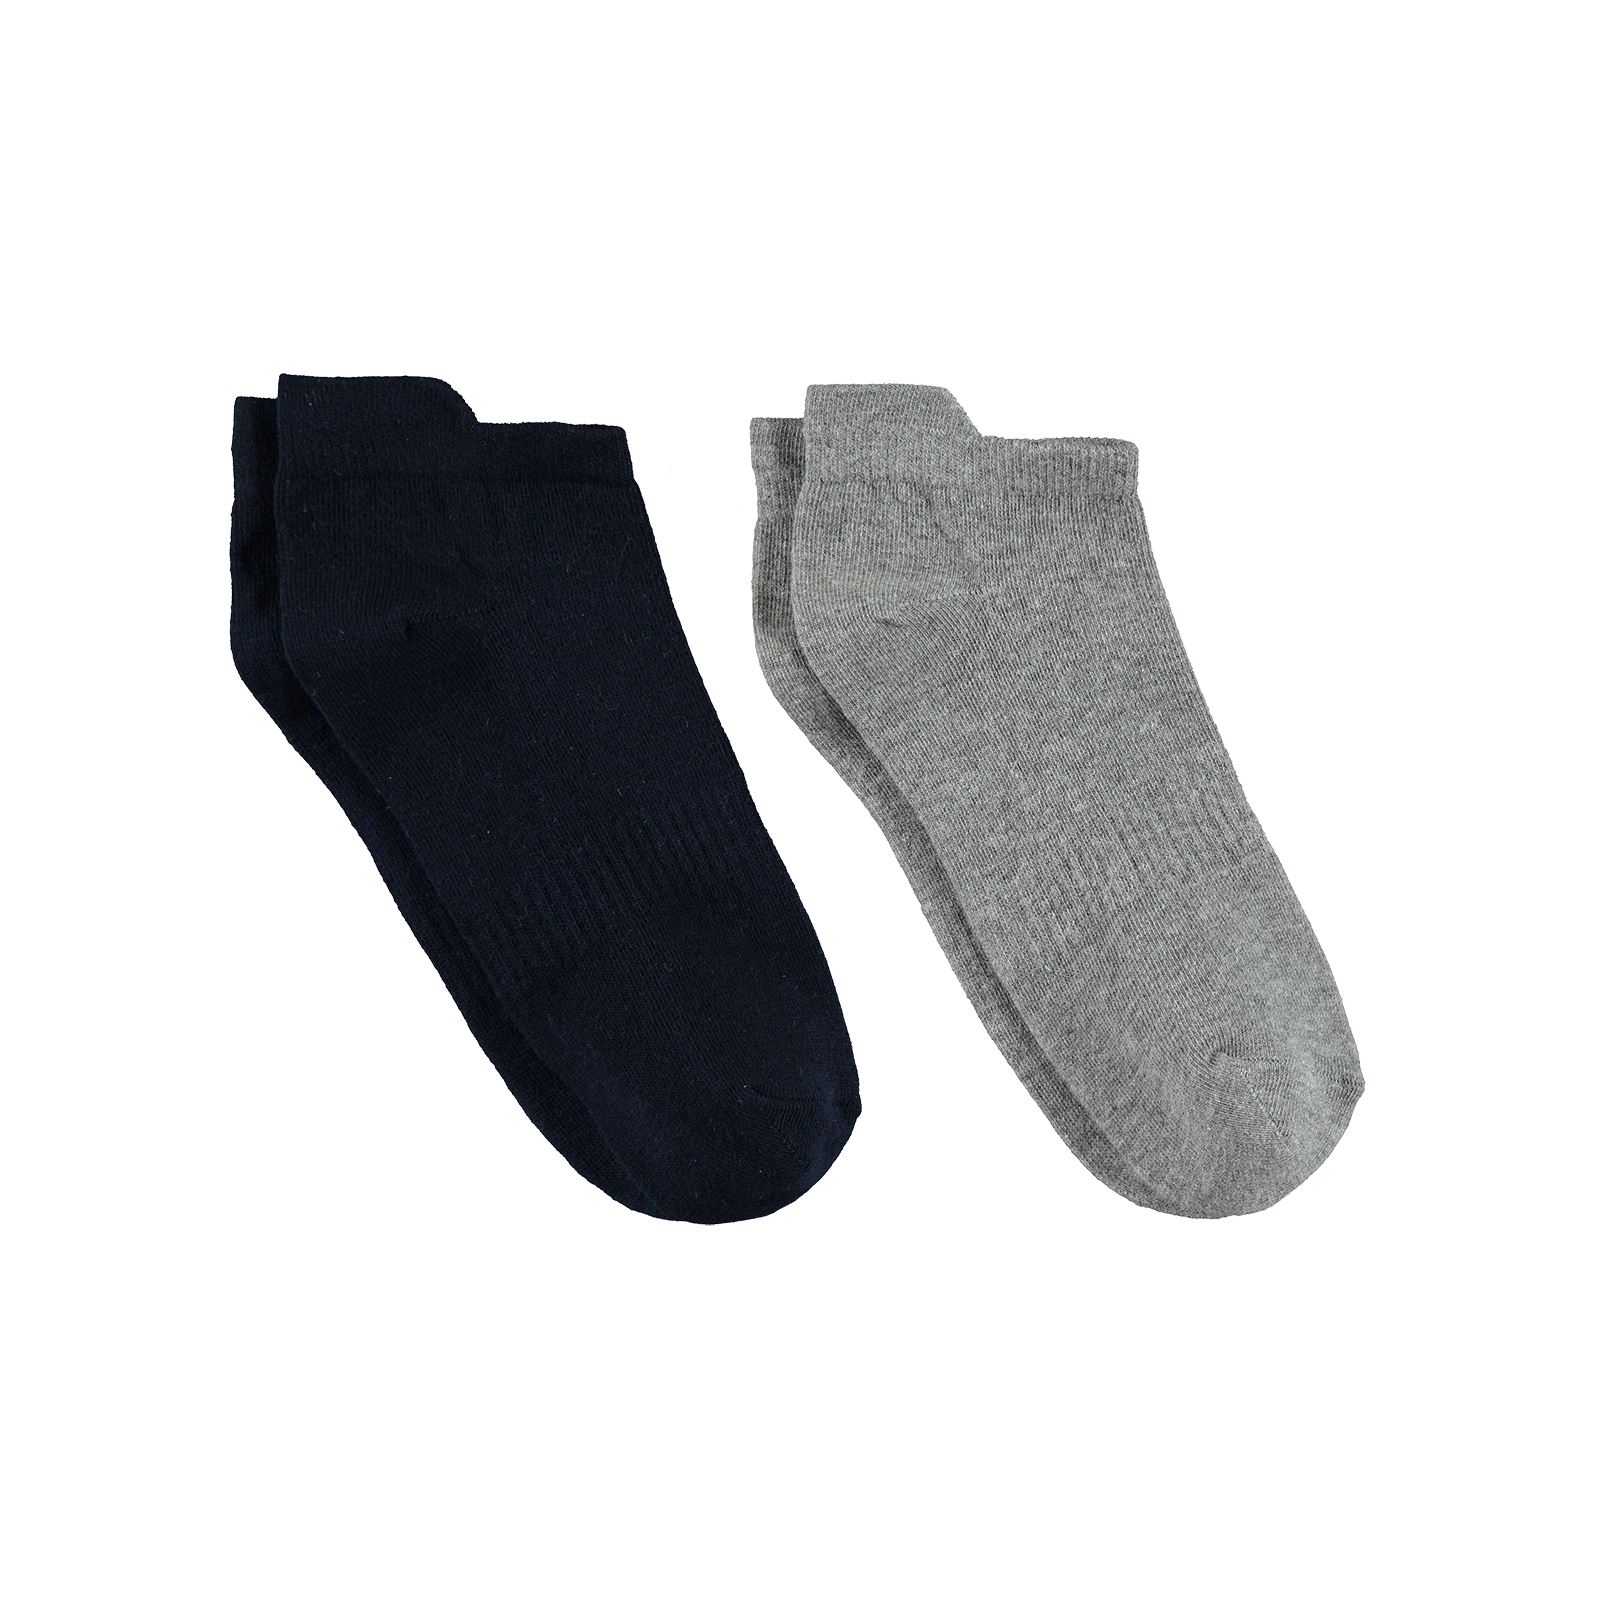 Gzn Erkek 2'li Dikişsiz Patik Çorap 40-44 Numara Siyah-Gri